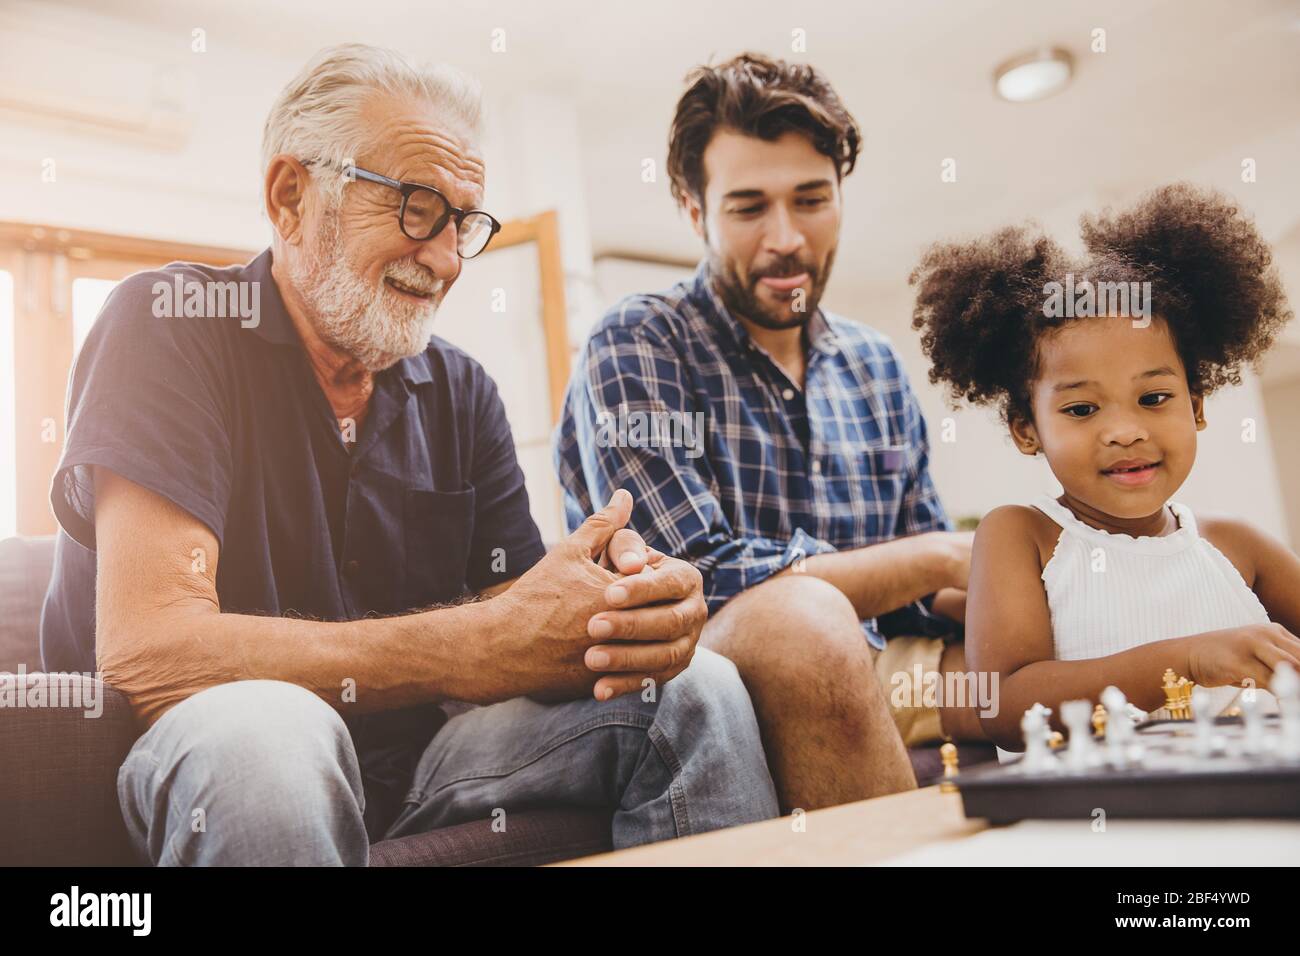 Glückliche Familie Moment Ältester mit Kind kleines Mädchen und Sohn zu Hause Glück Moment spielen Schach. Stockfoto